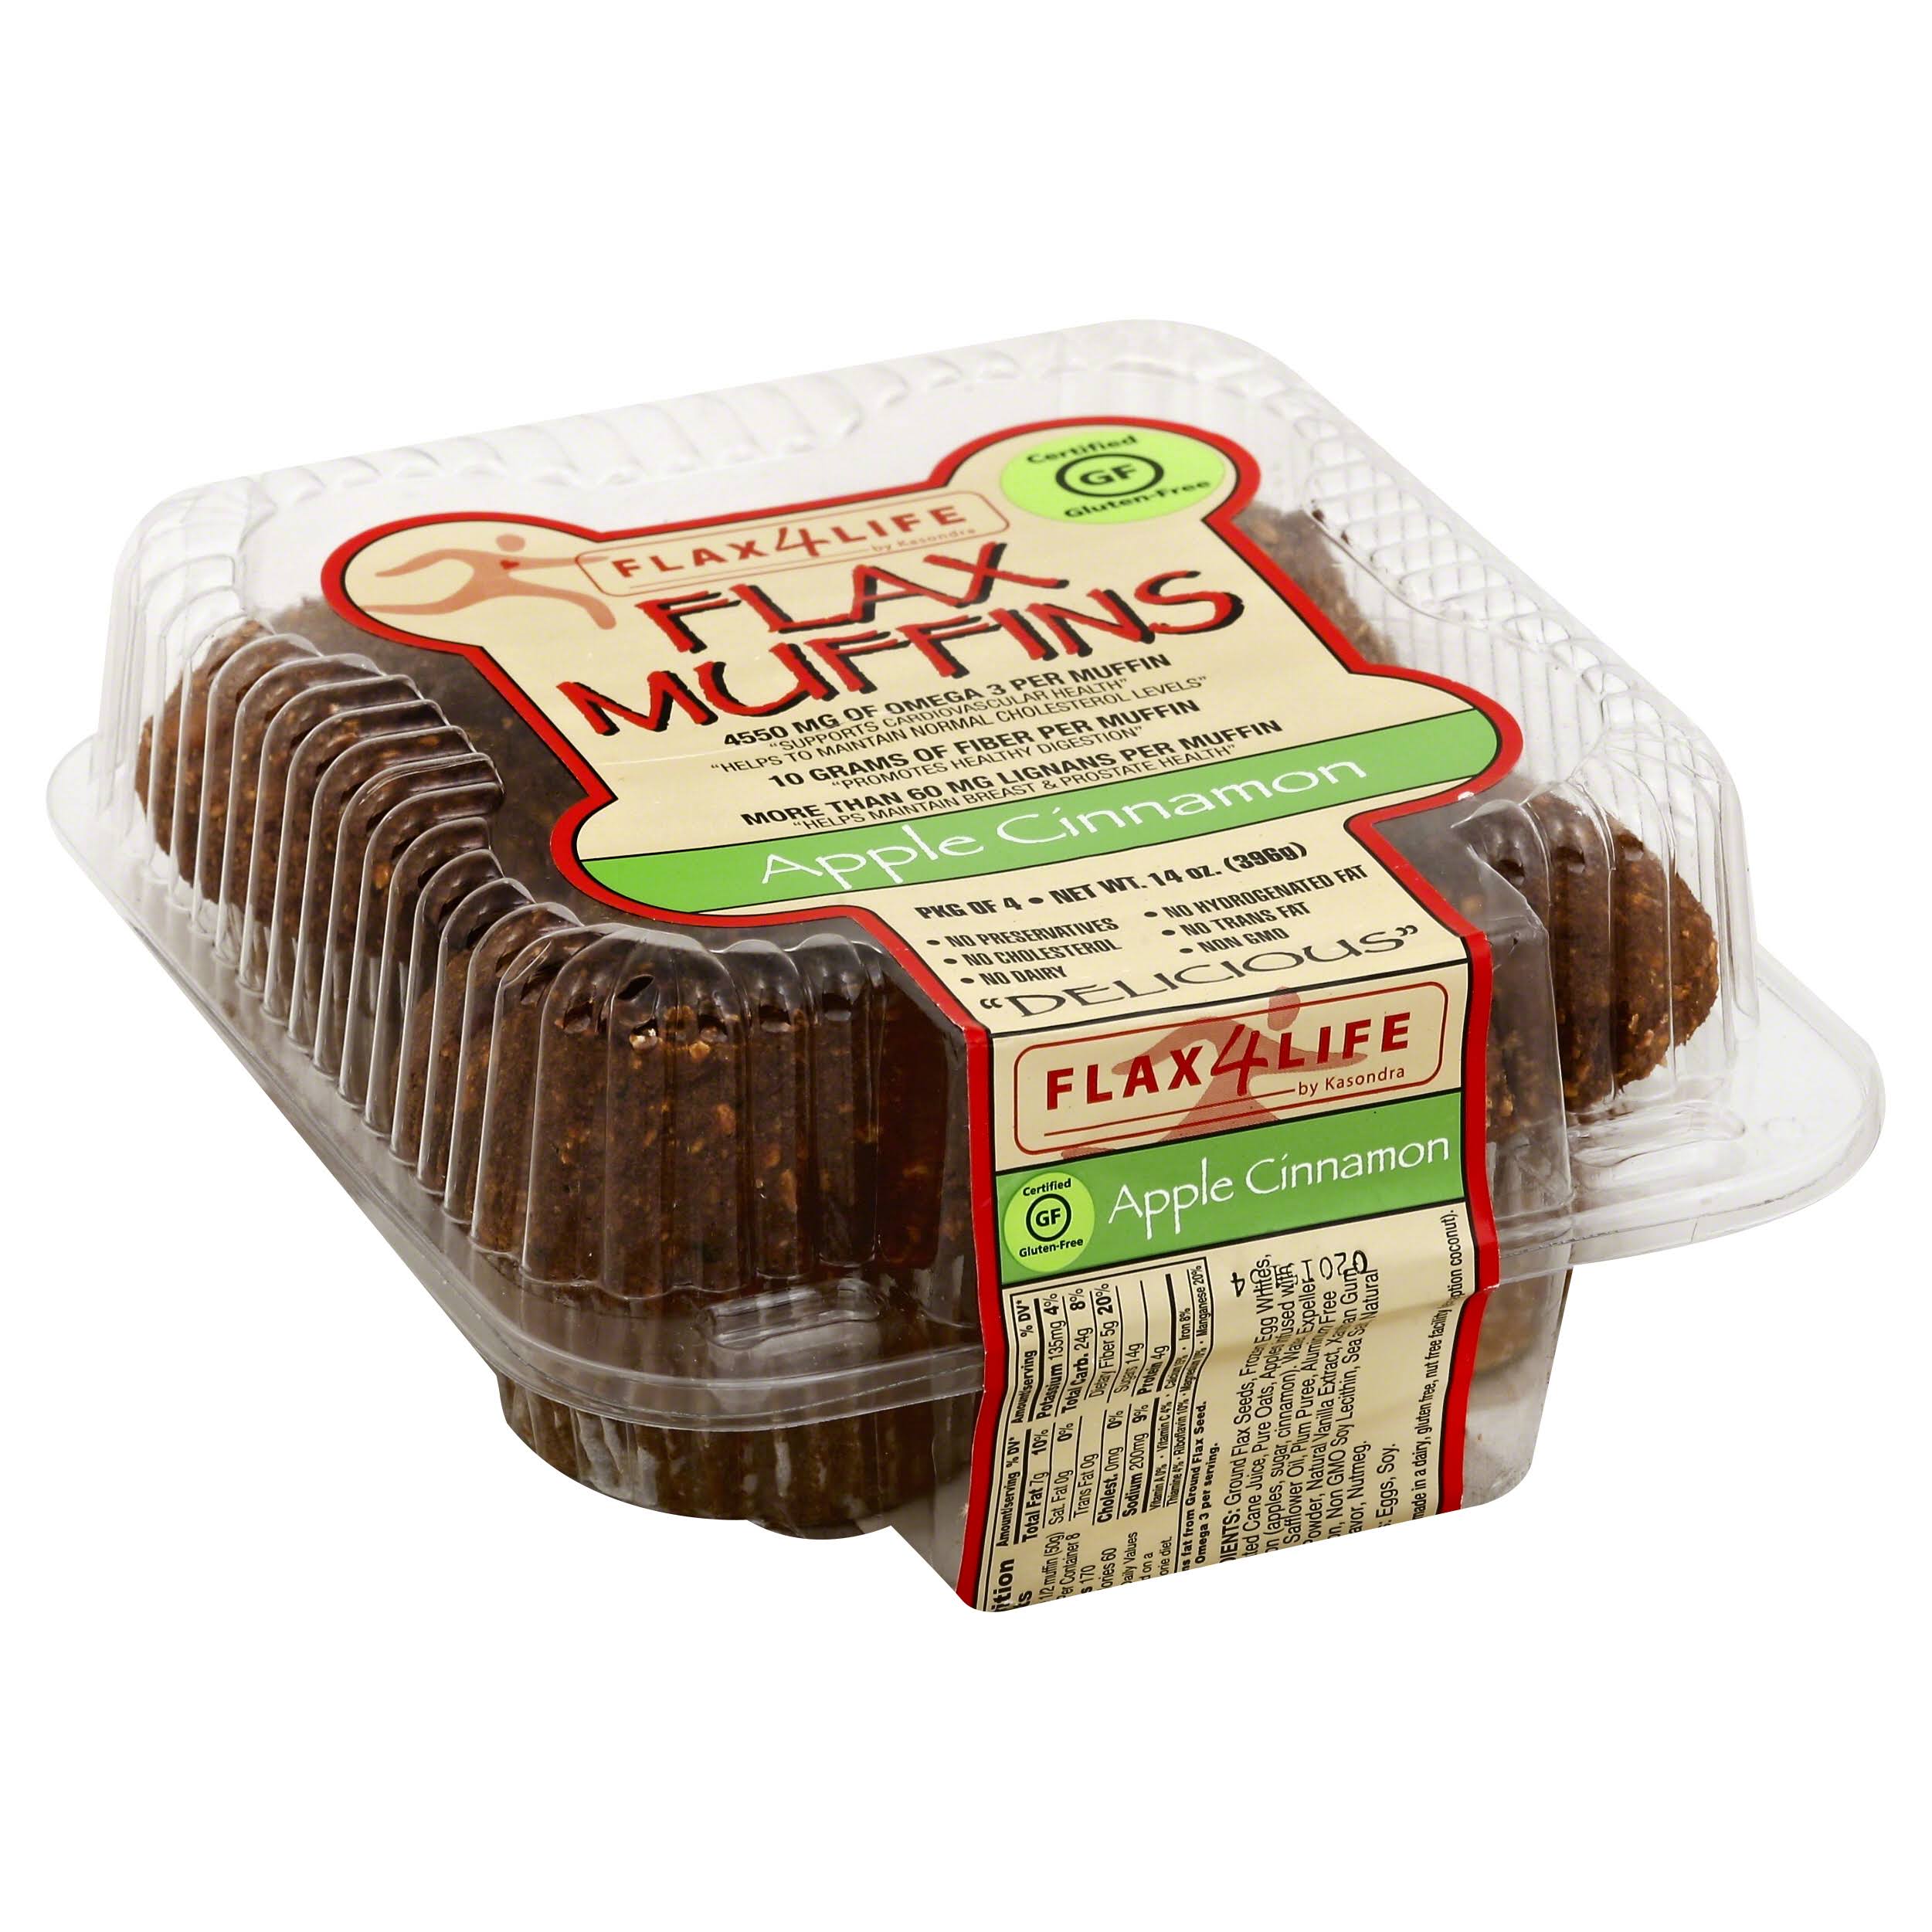 Flax4life Muffins Flax - Apple Cinnamon